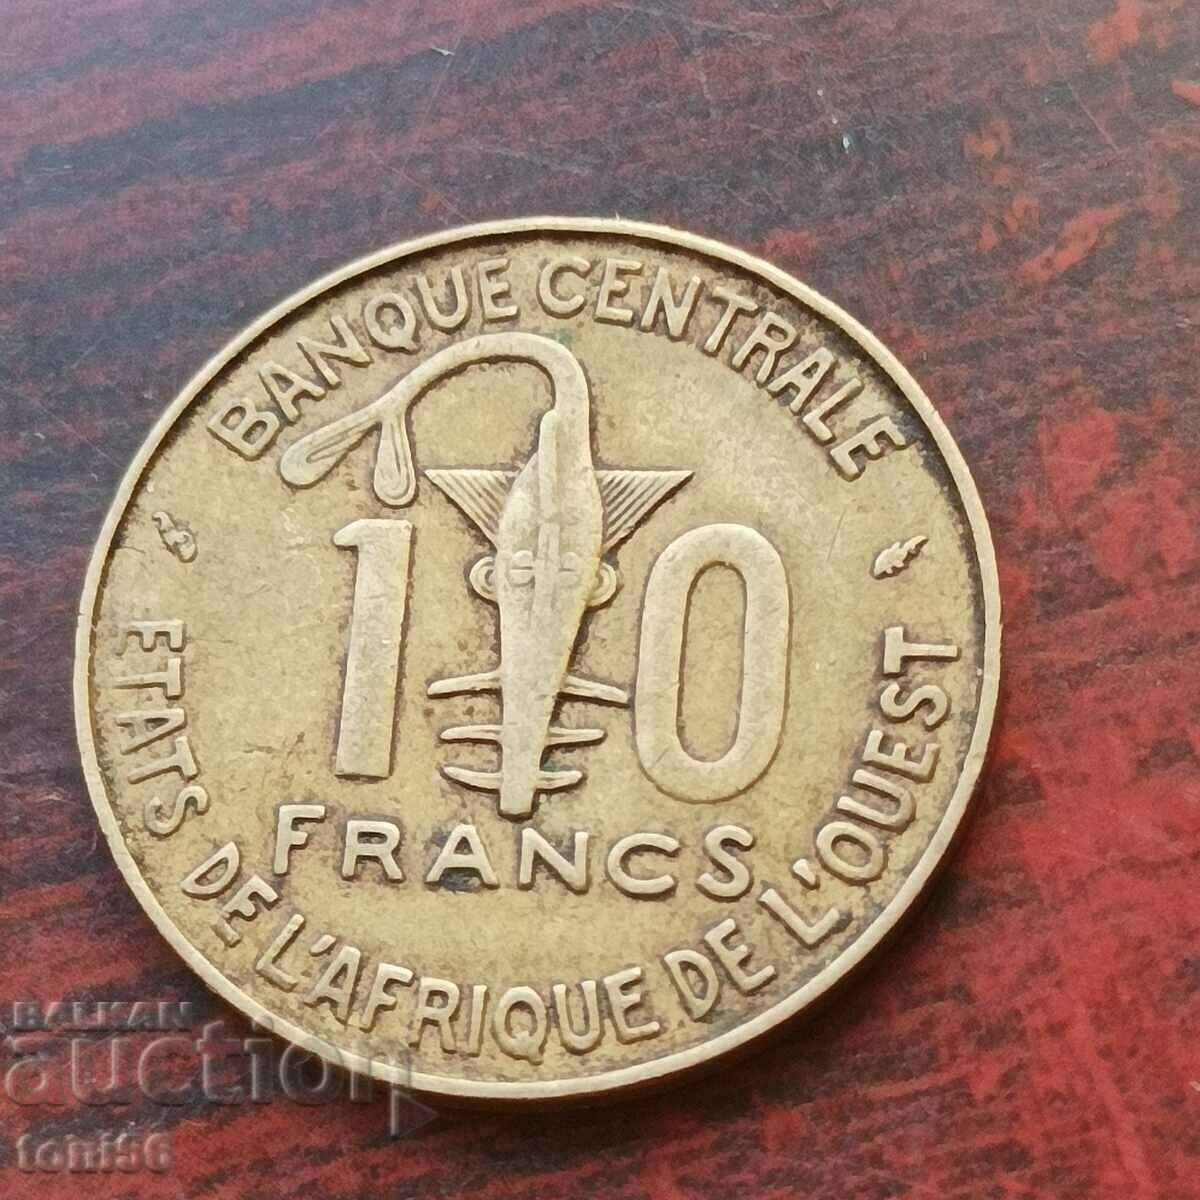 West Africa 10 francs 1976